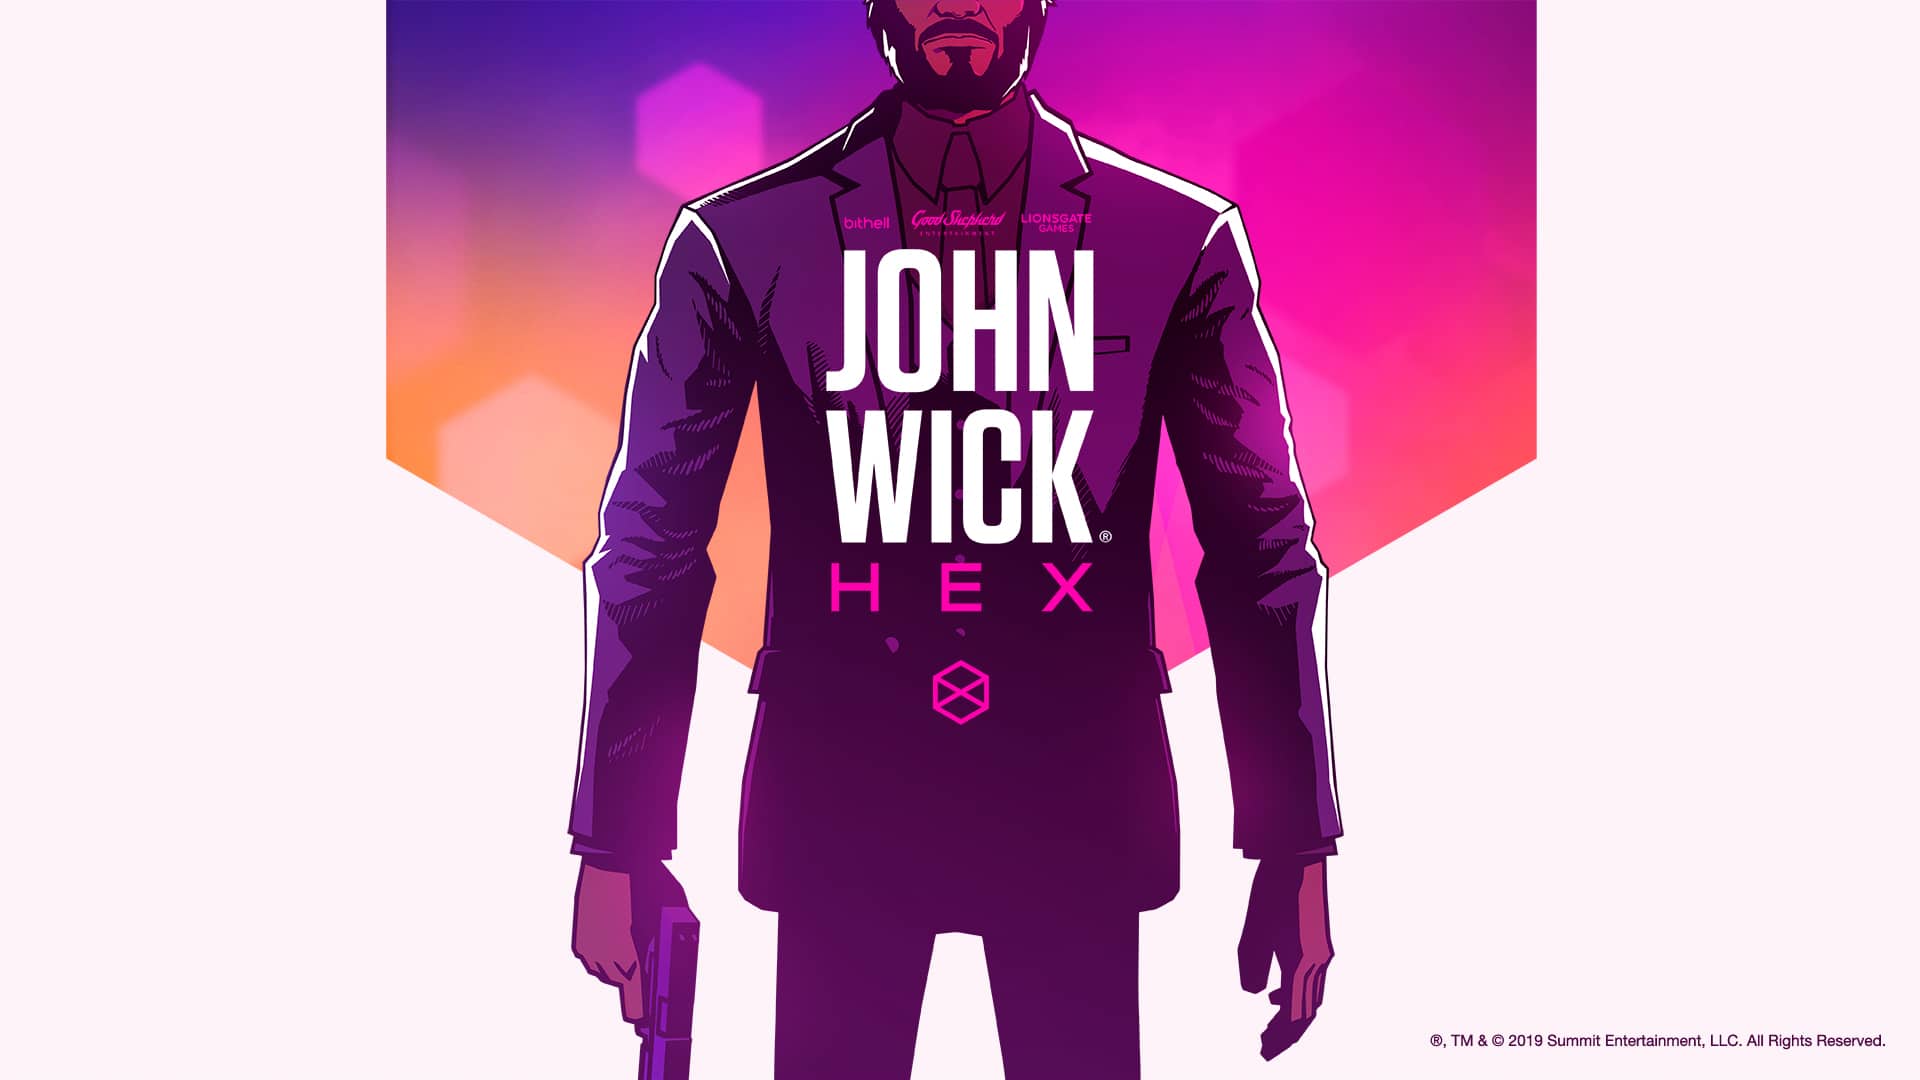 John Wick tendrá videojuego de estrategia